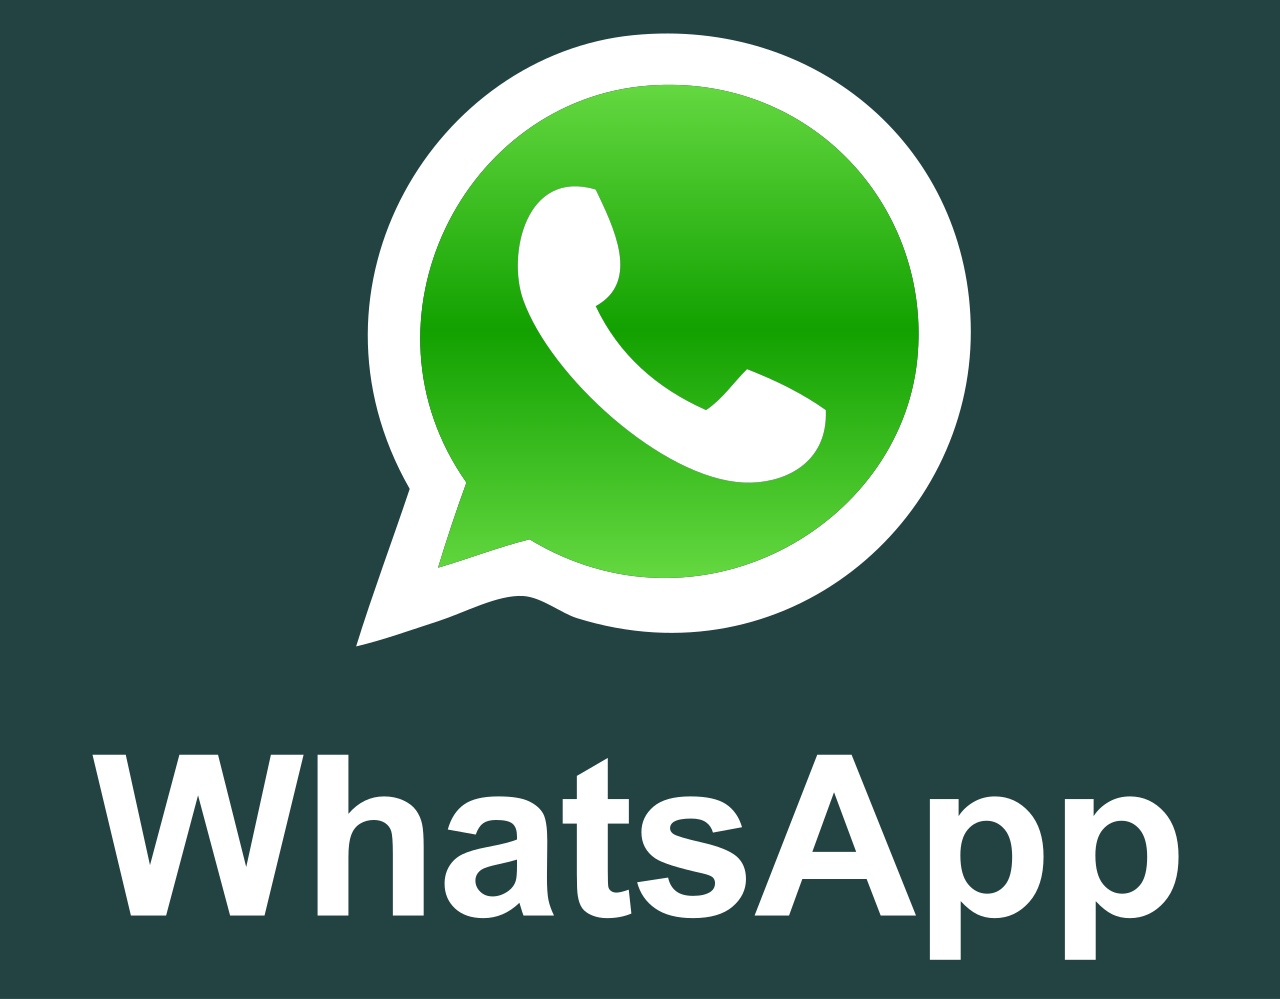 ¿Problemas con WhatsApp? Puede probar alguna de estas soluciones